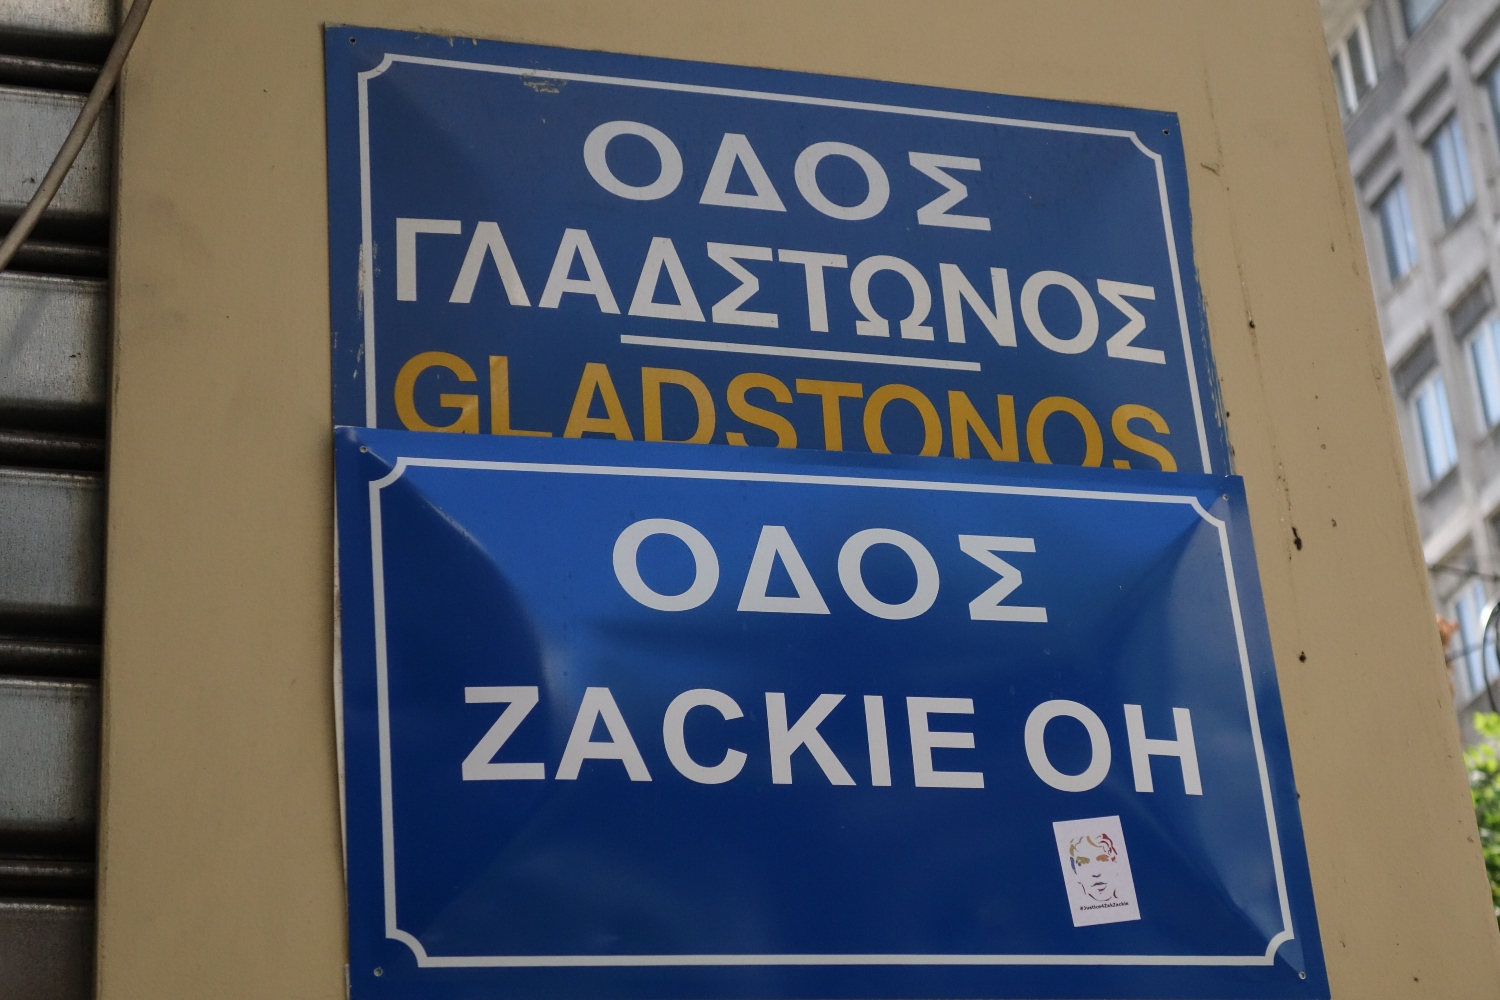 Τους «ενοχλεί» ακόμη ο Ζακ/ΖackieOh: Κάλυψαν ξανά την πινακίδα μνήμης και τιμής στη Γλάδστωνος